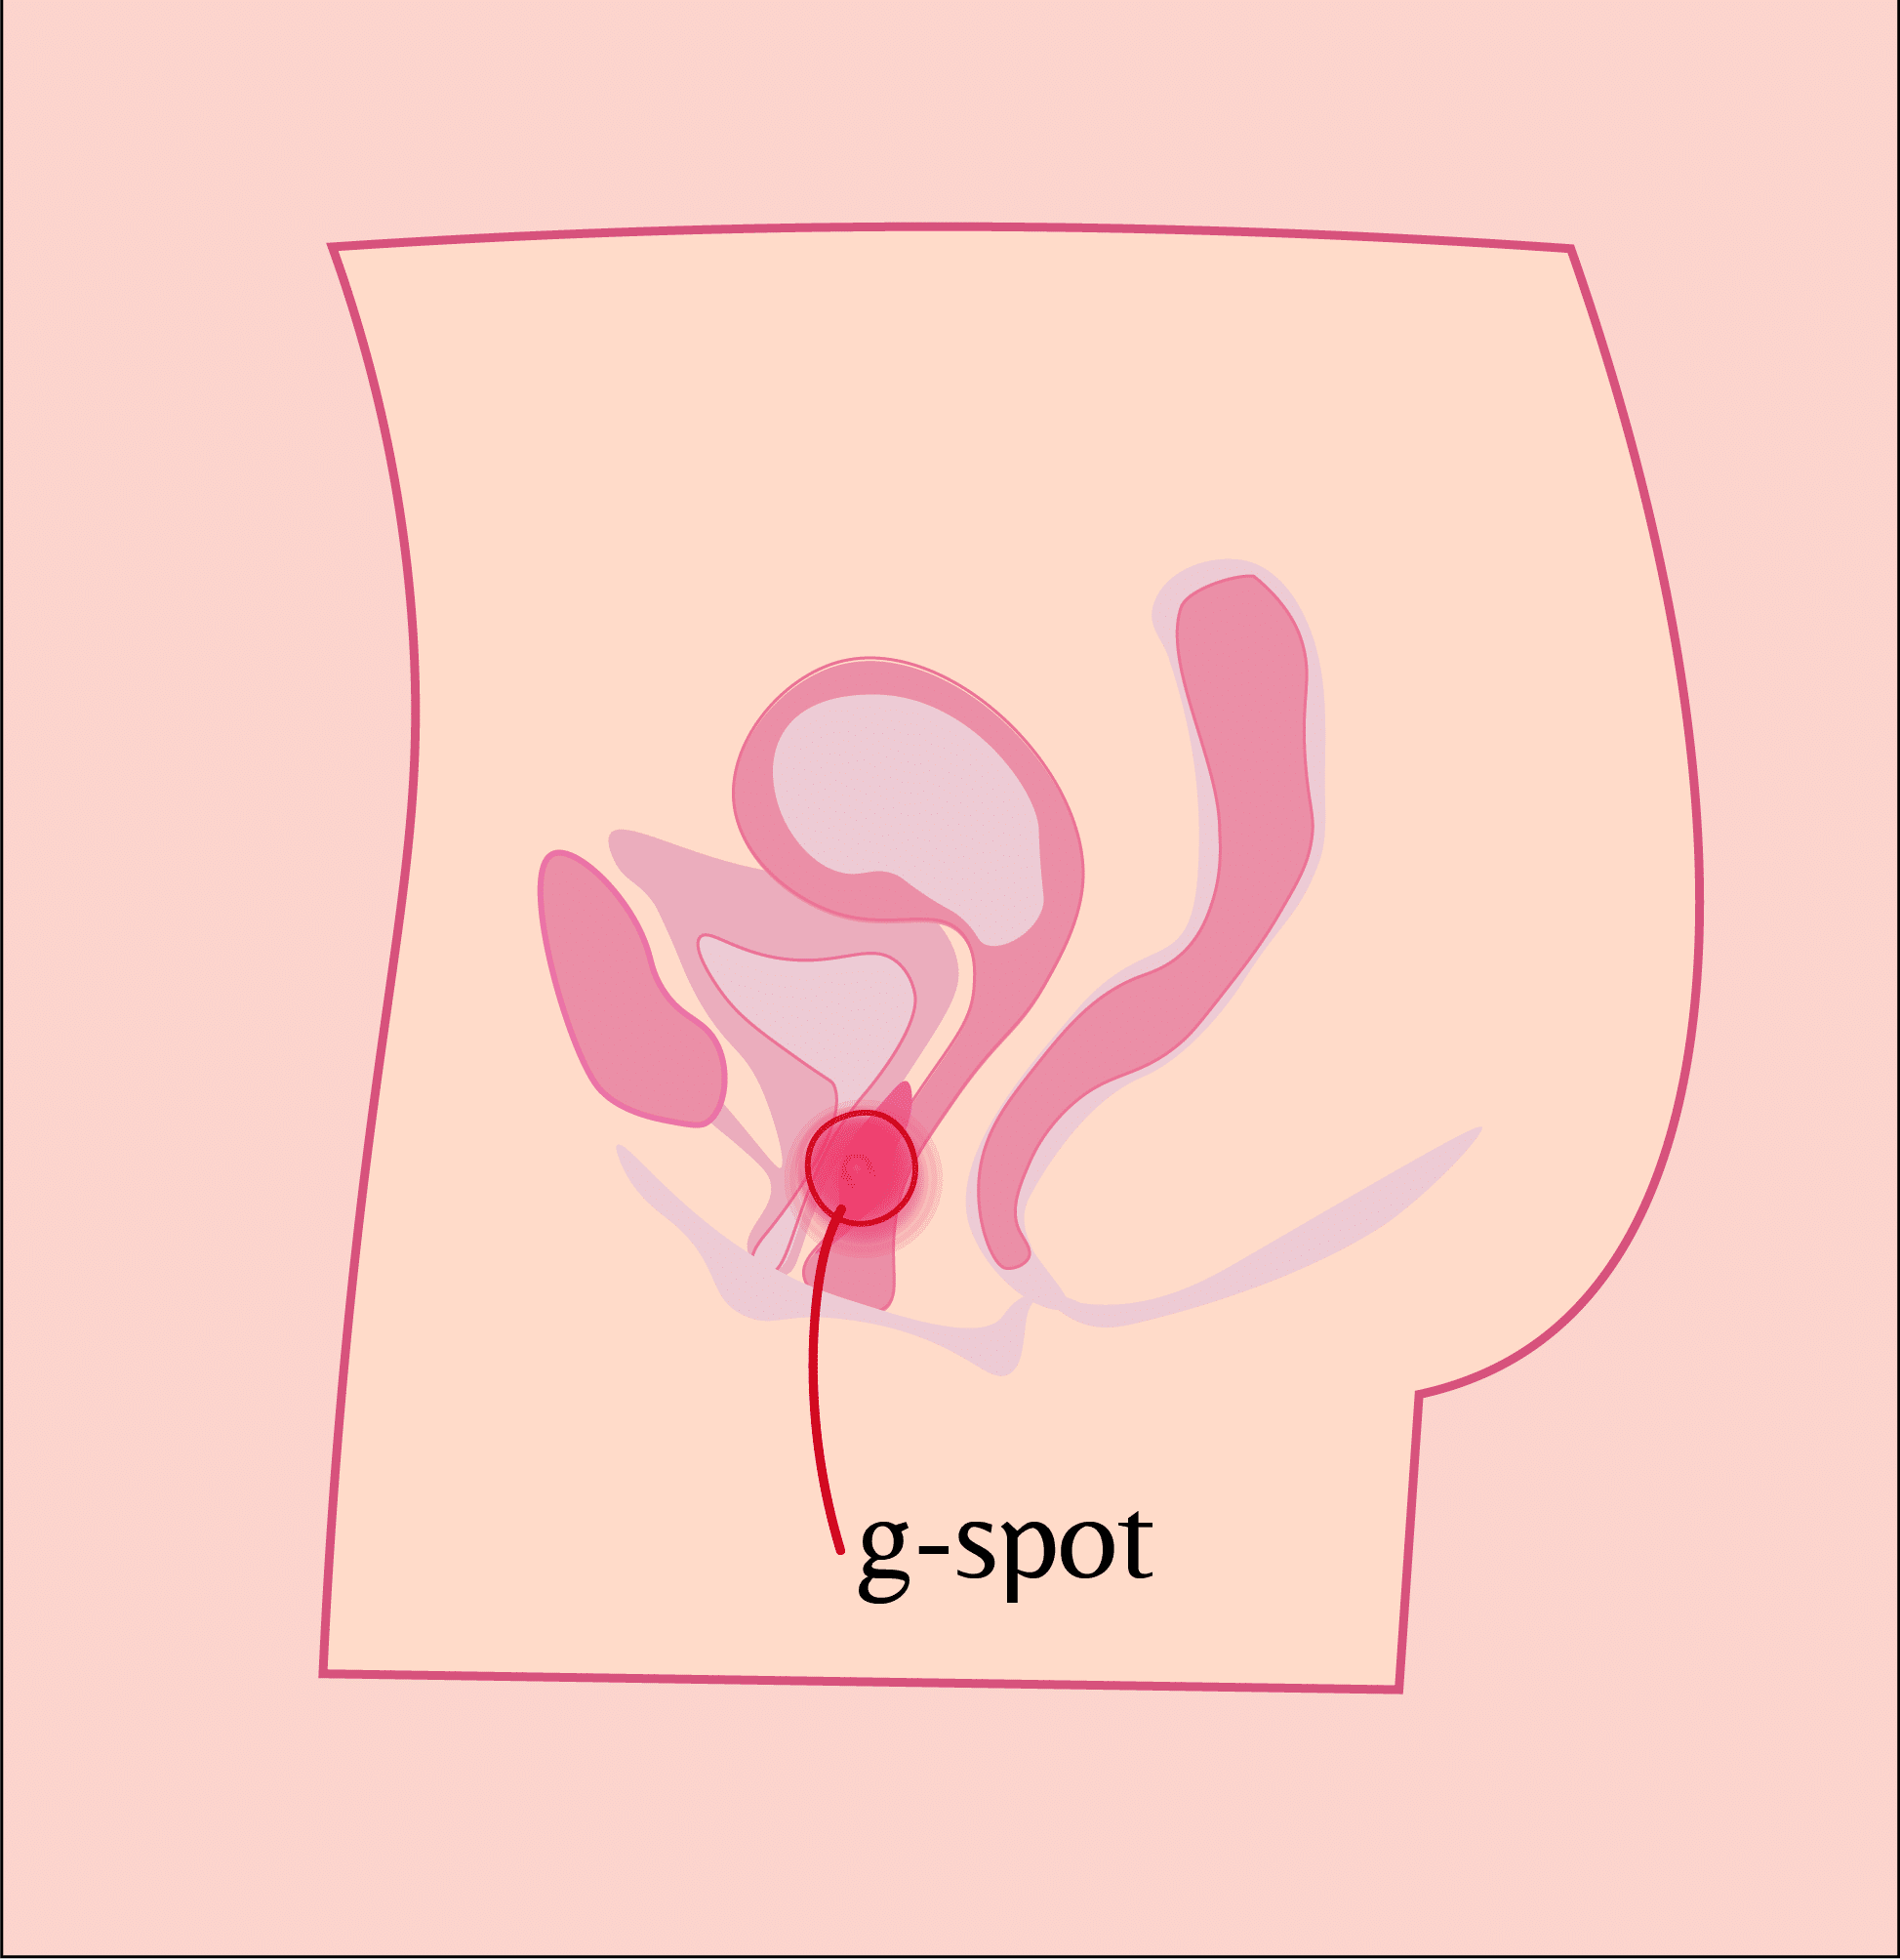 G-spot location